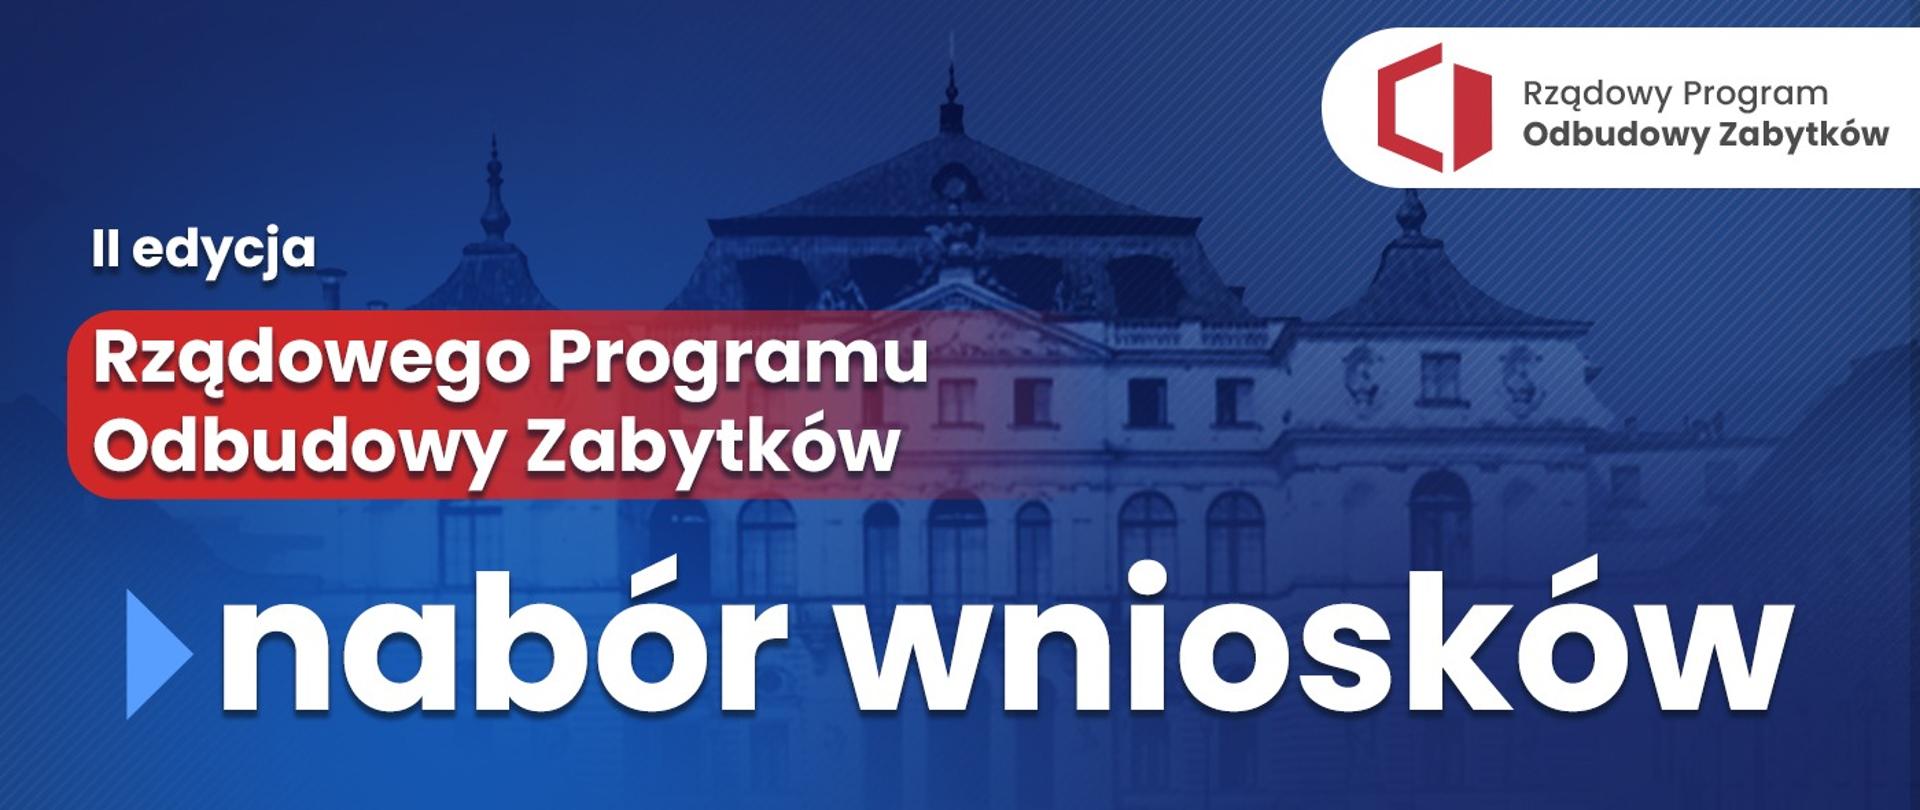 II edycja Rządowego Programu Odbudowy Zabytków.